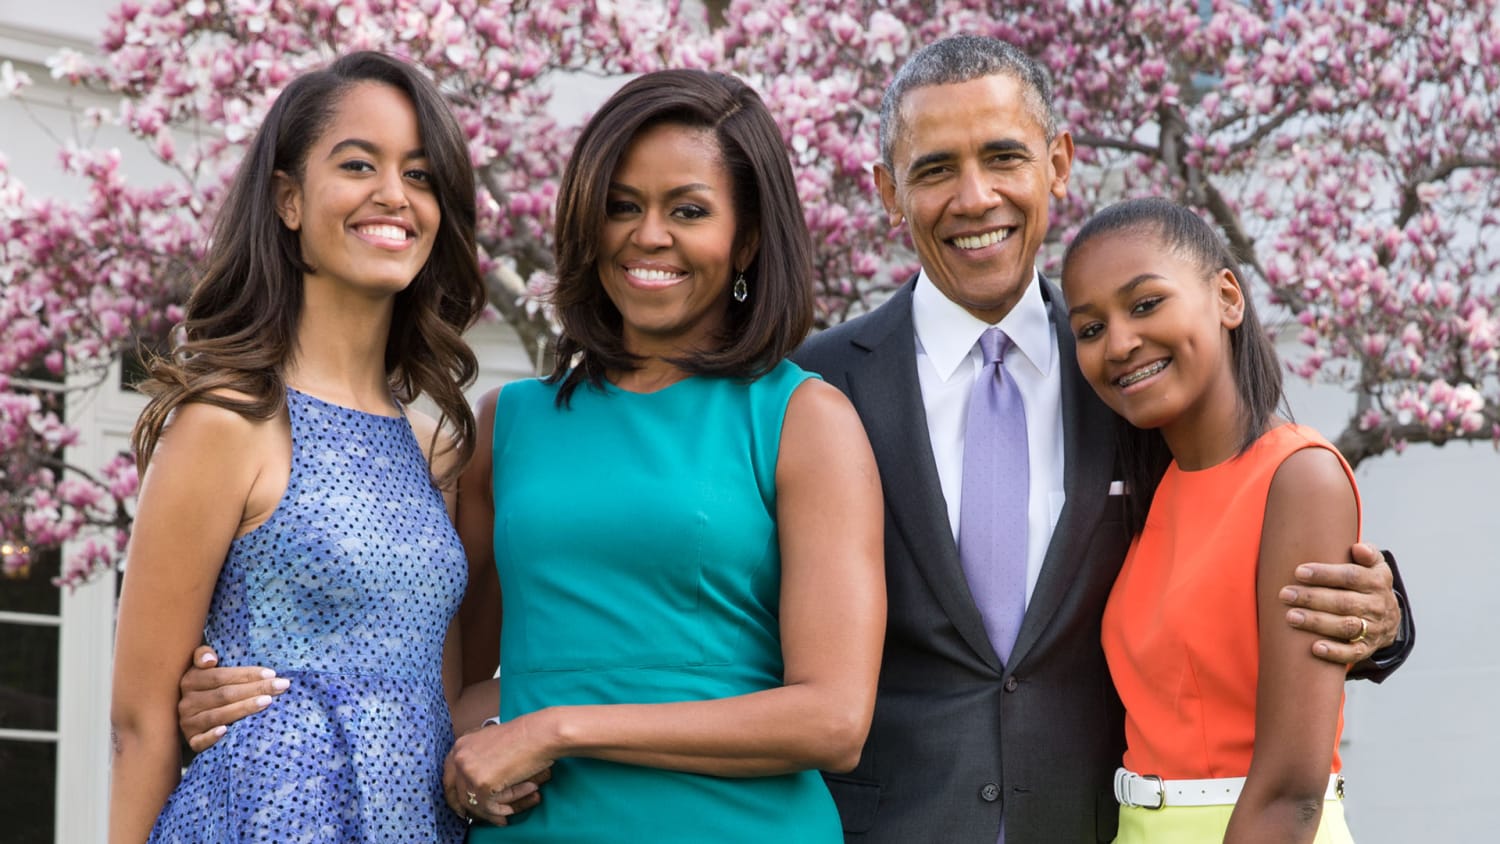 President Obama pens essay: White House made family life more normal - TODAY.com1920 x 1080